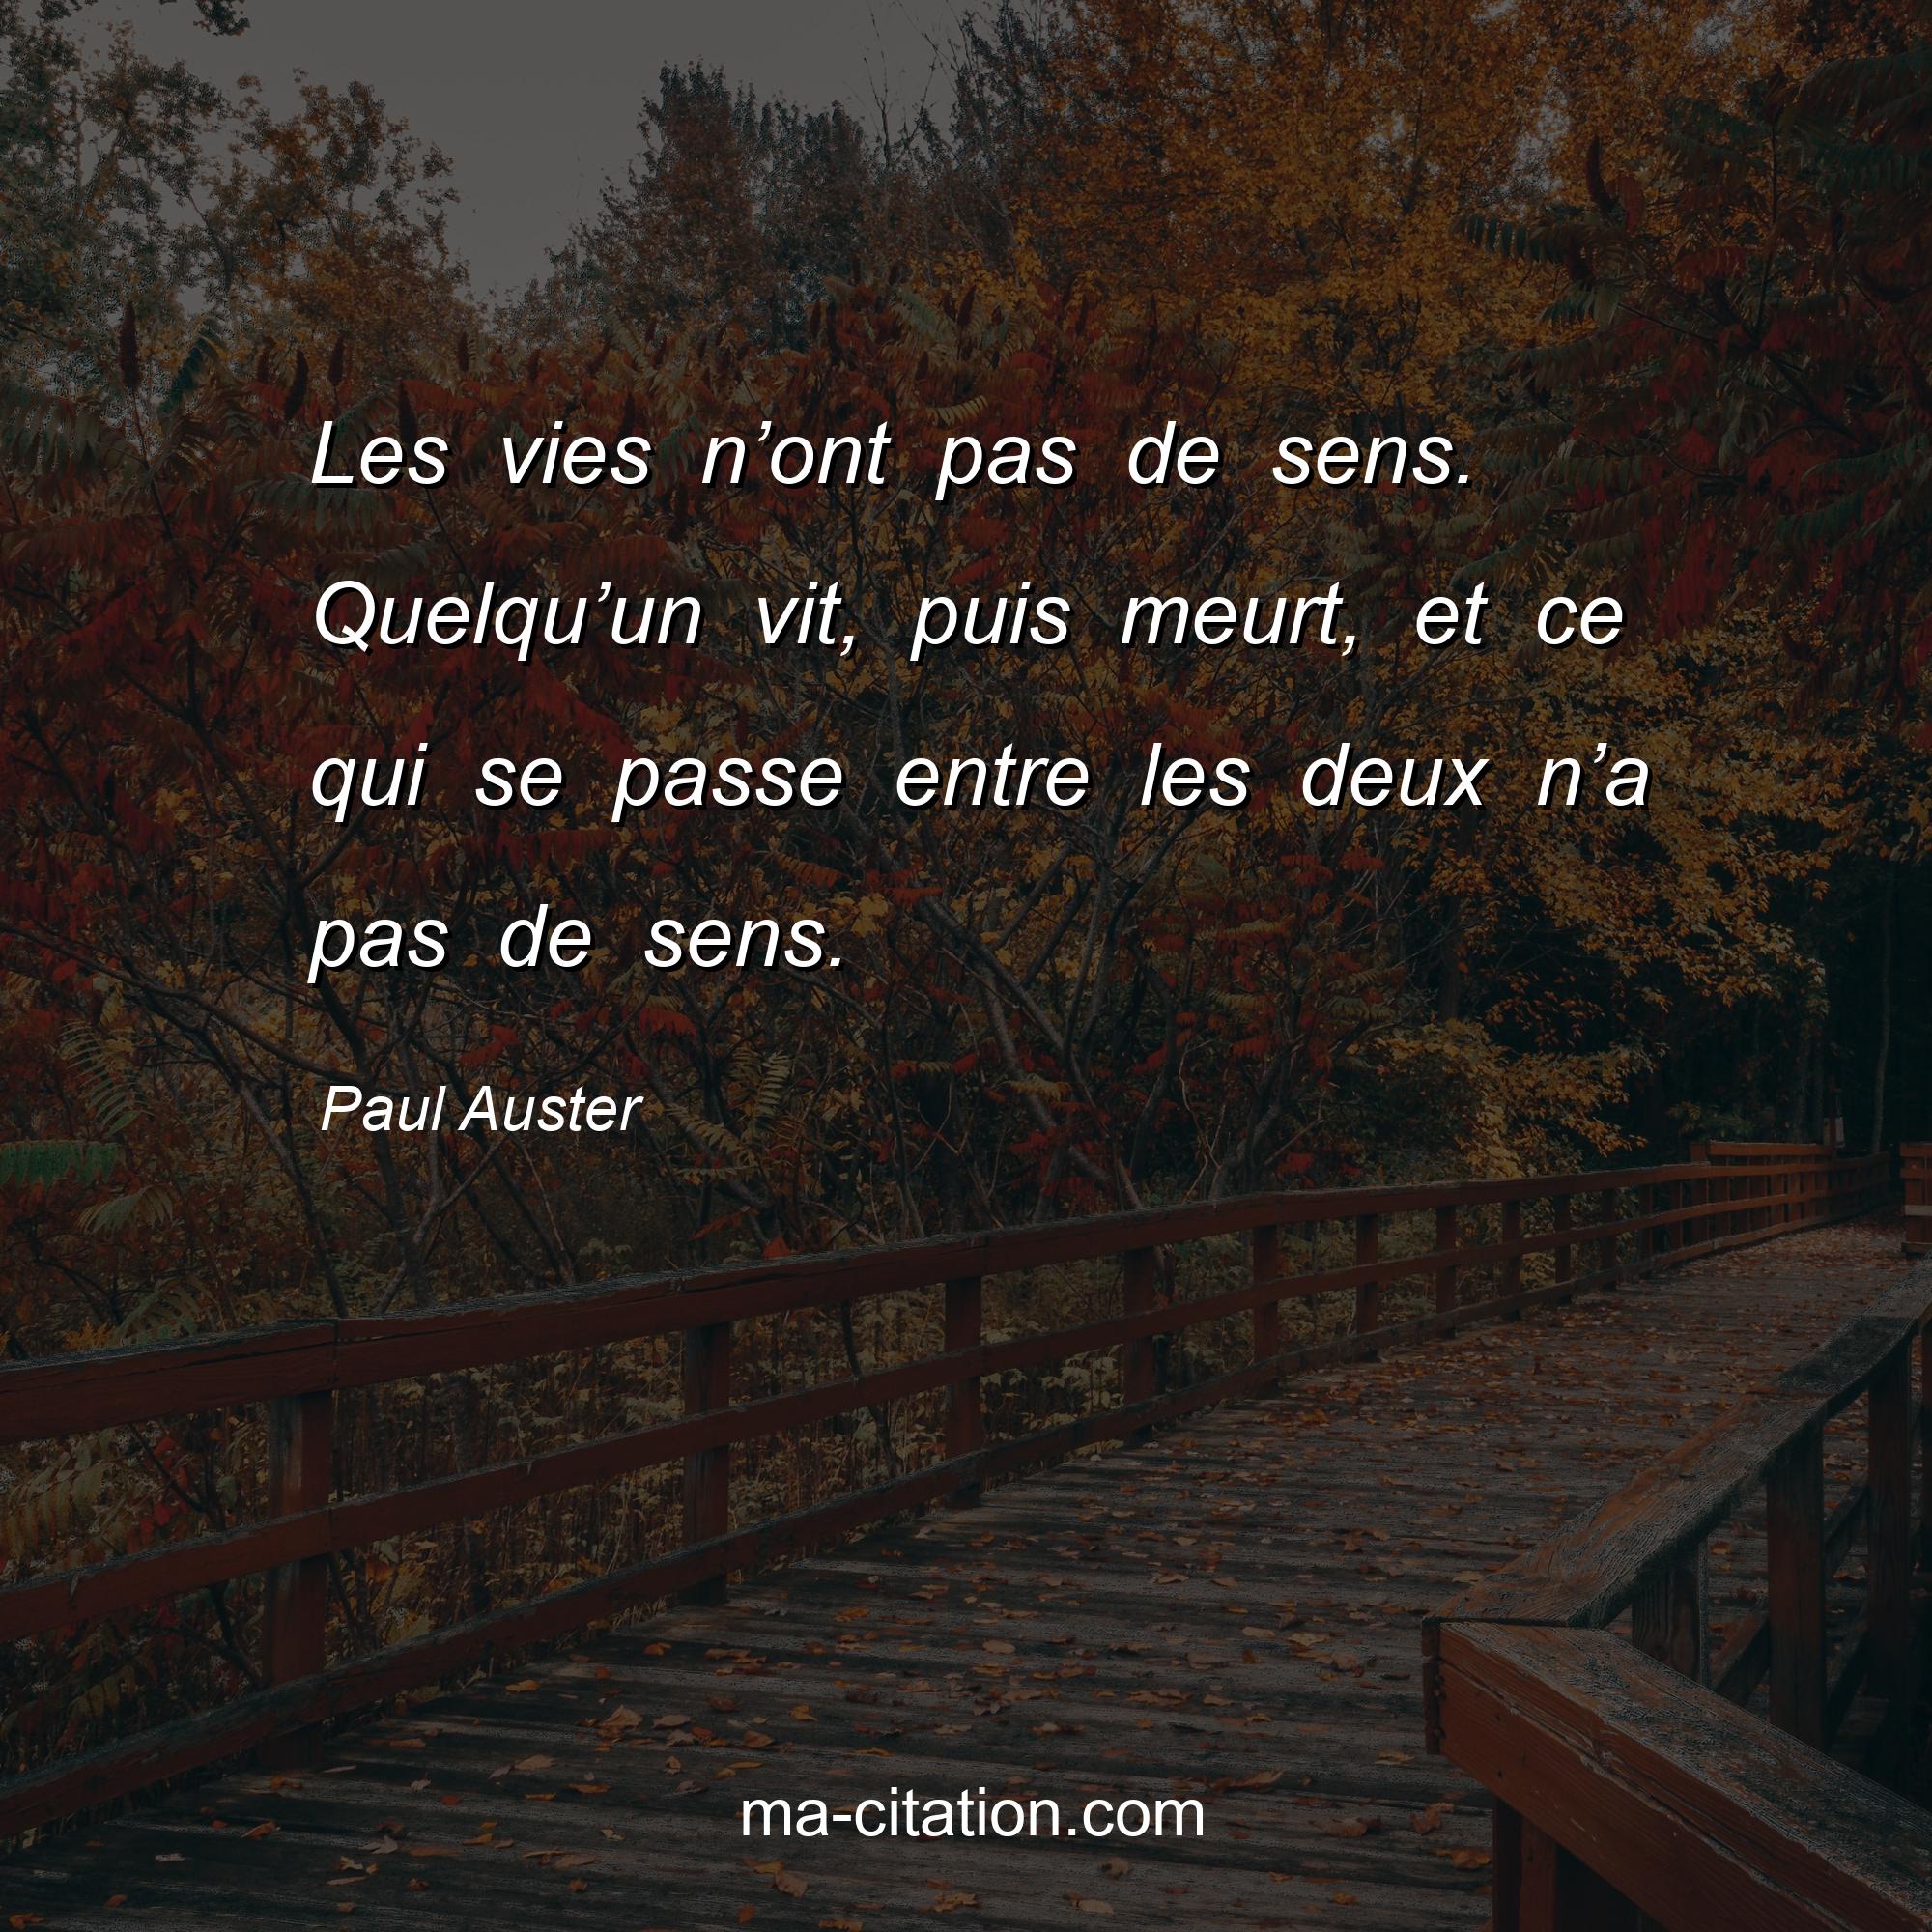 Paul Auster : Les vies n’ont pas de sens. Quelqu’un vit, puis meurt, et ce qui se passe entre les deux n’a pas de sens.